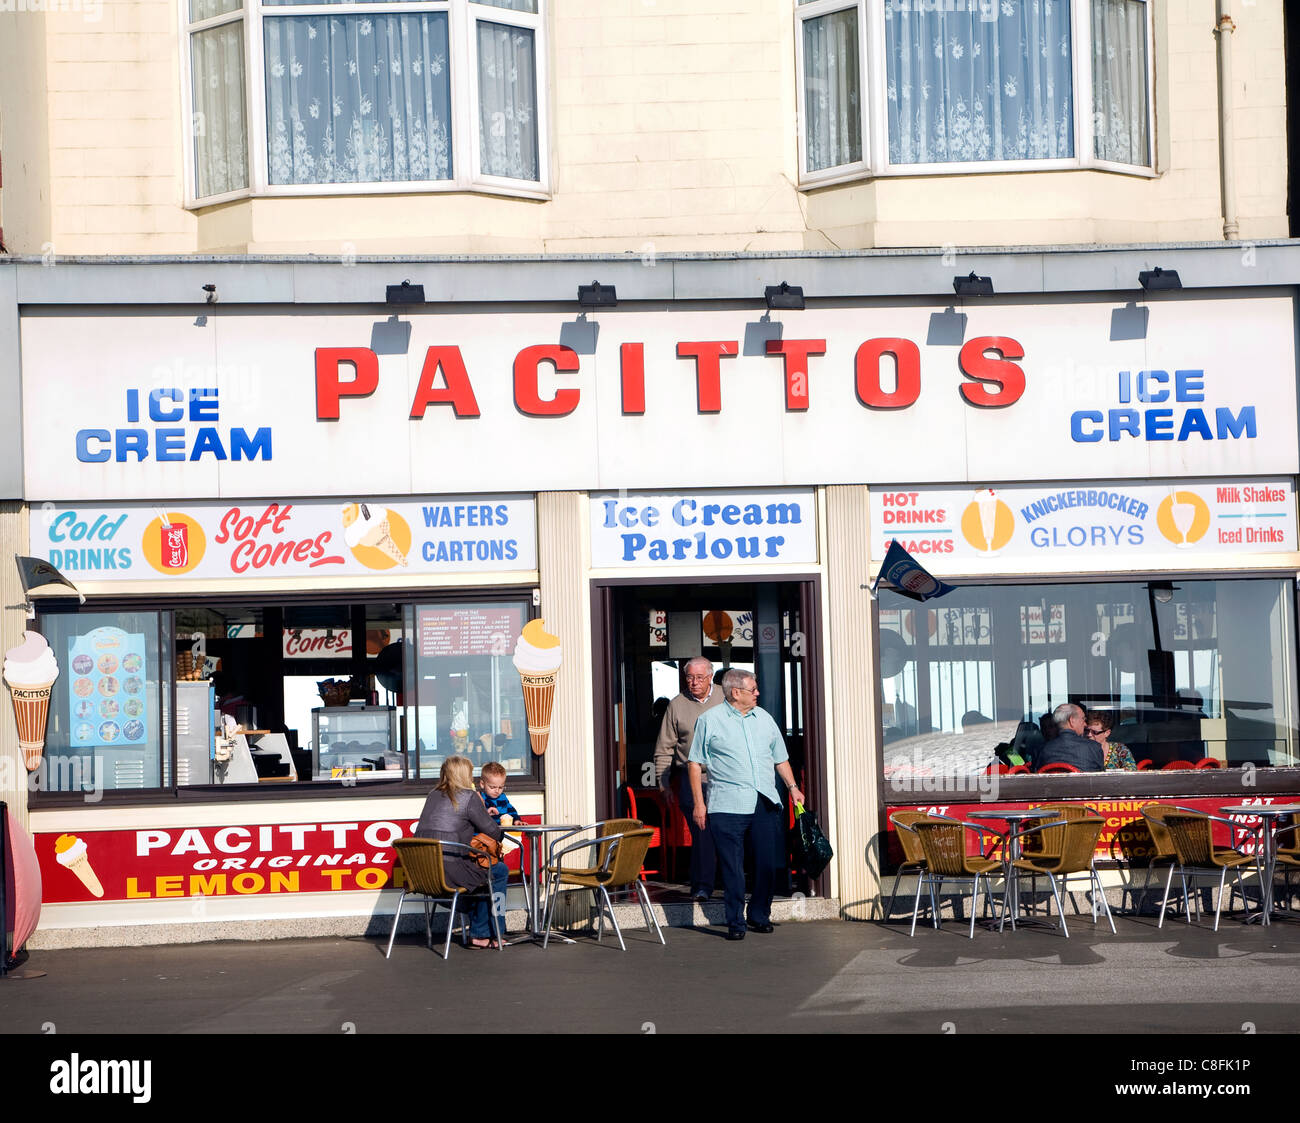 Pacittos italienische Eis Shop und Café, Scarborough, Yorkshire, England Stockfoto